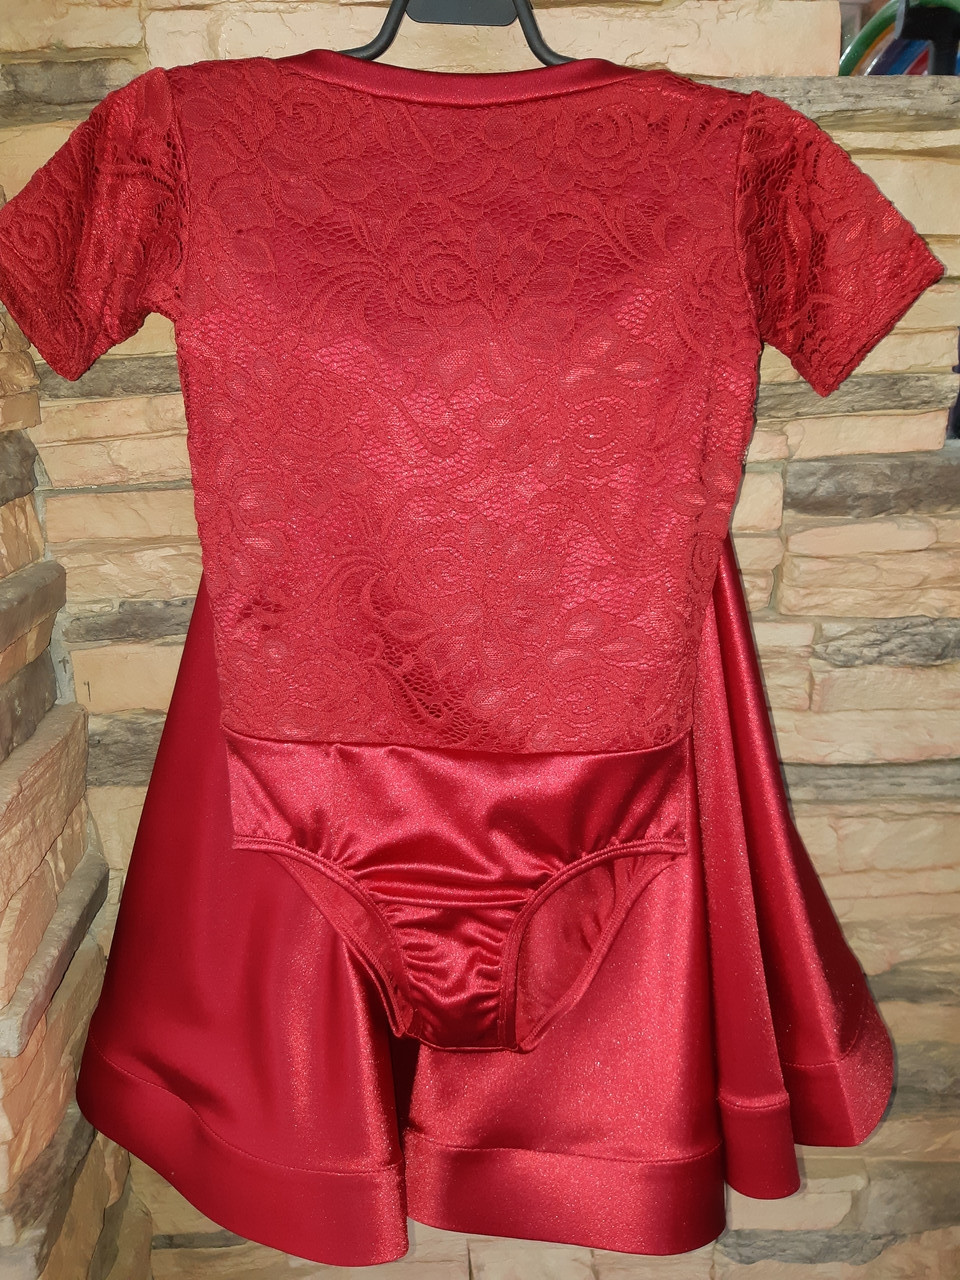 Комплект боди гипюр+юбка, рукав 1/4 (34 размер), фото 1